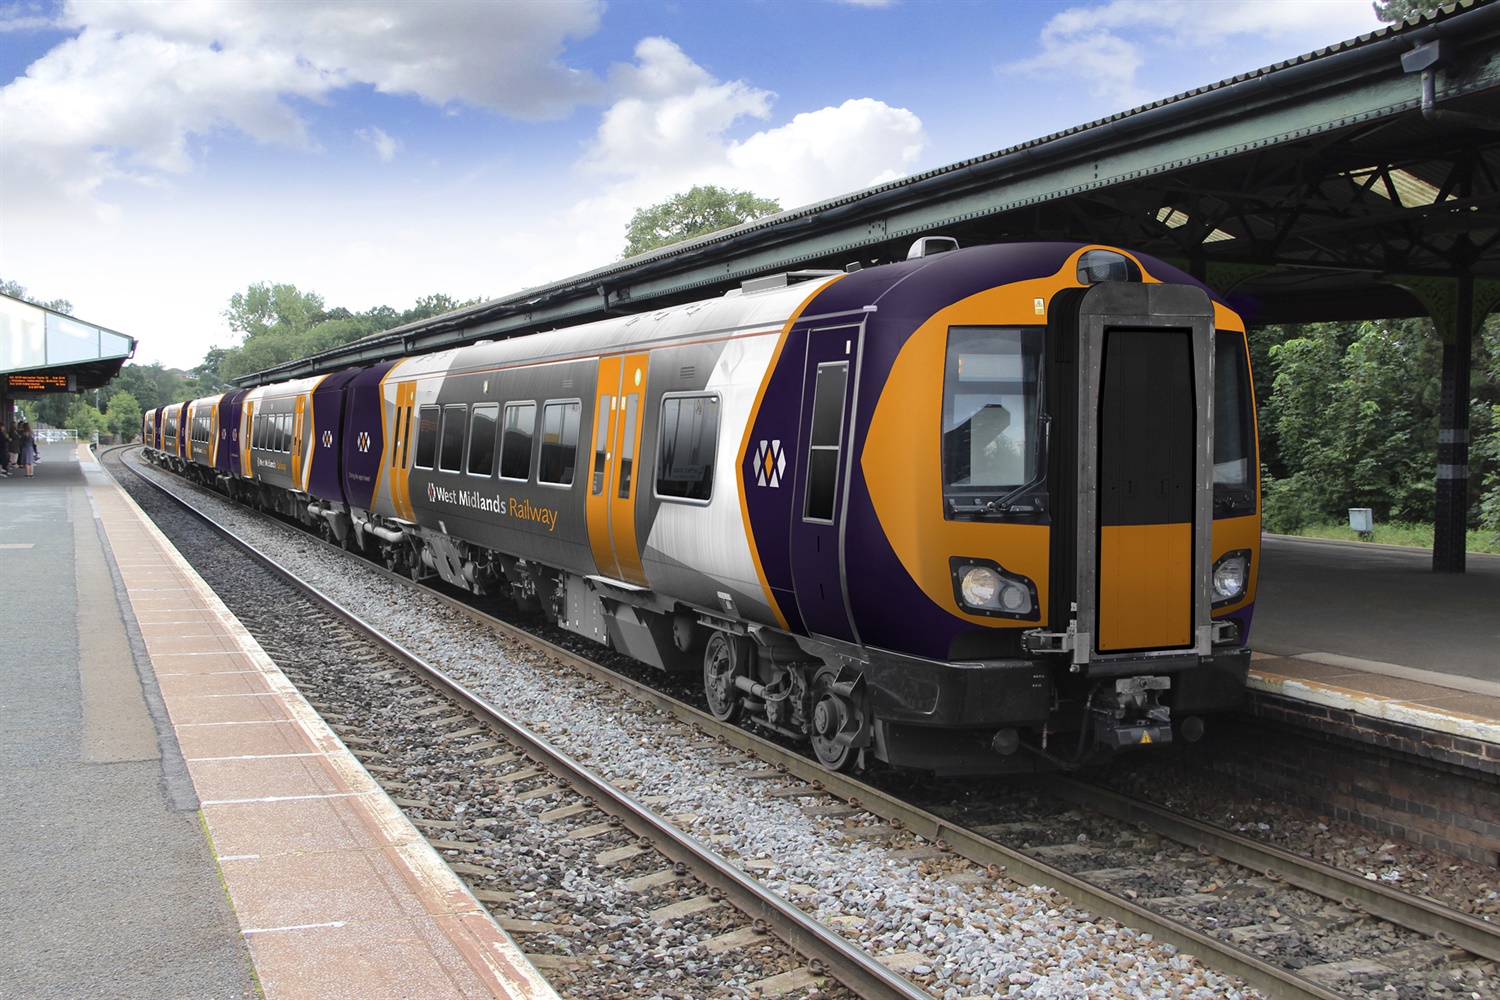 Abellio JV named winner of West Midlands rail franchise